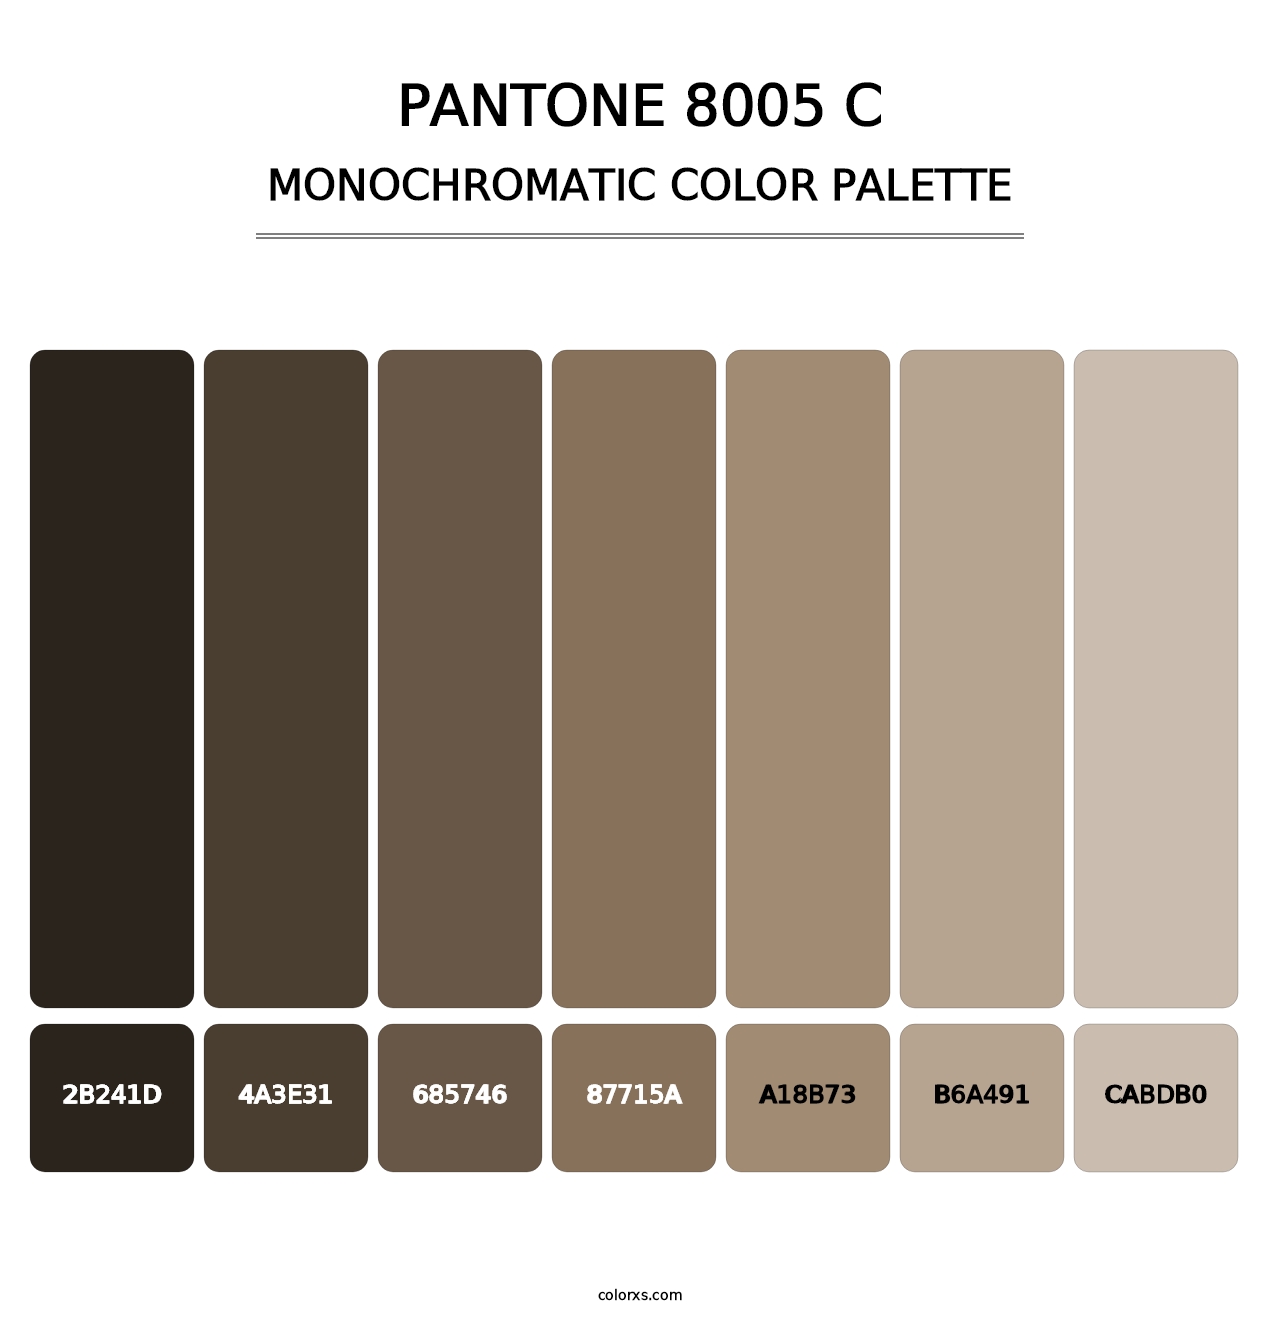 PANTONE 8005 C - Monochromatic Color Palette